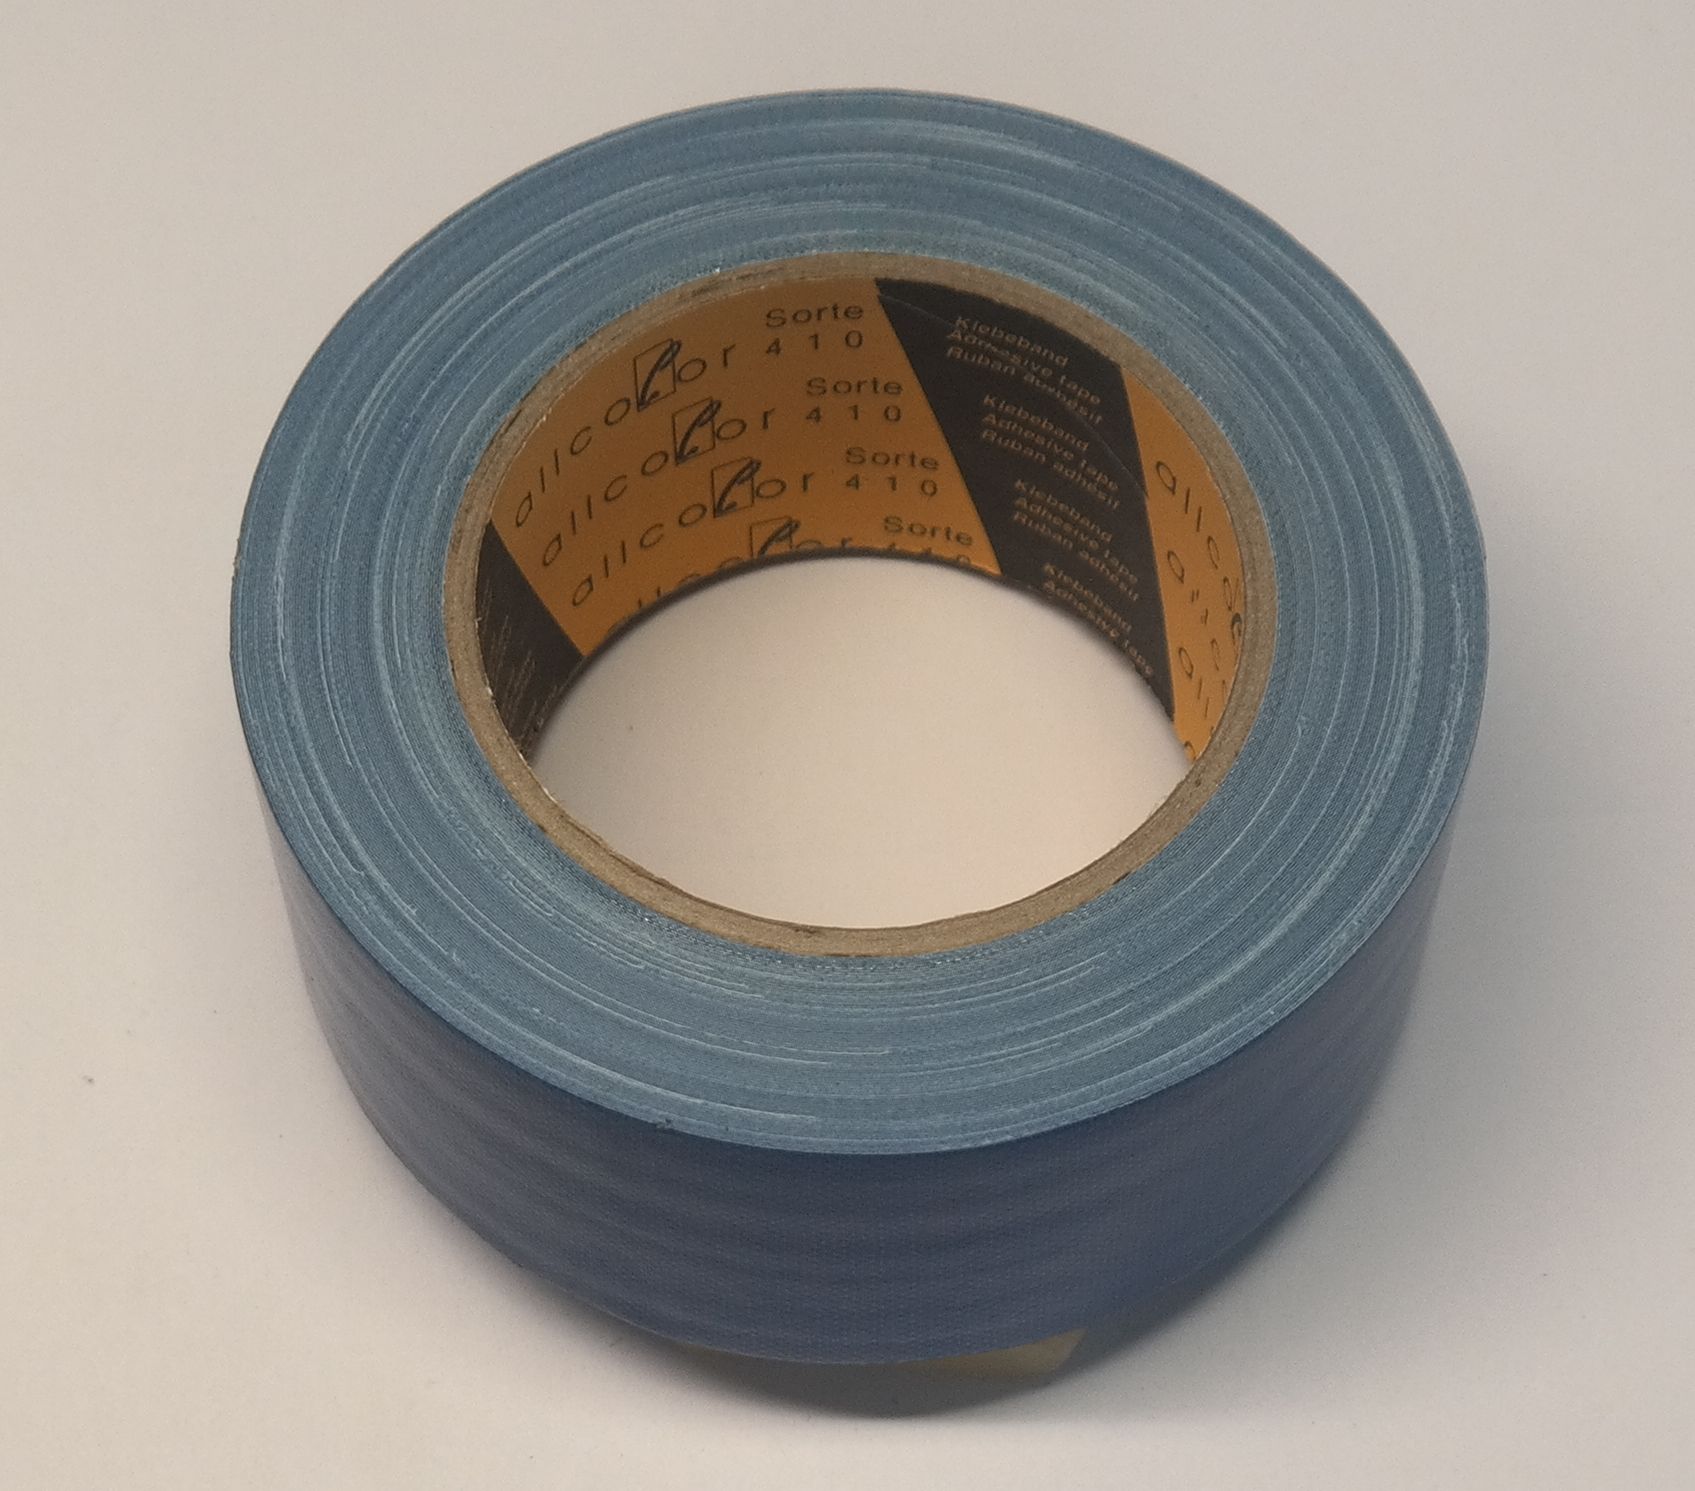 Adhesive fabric tape